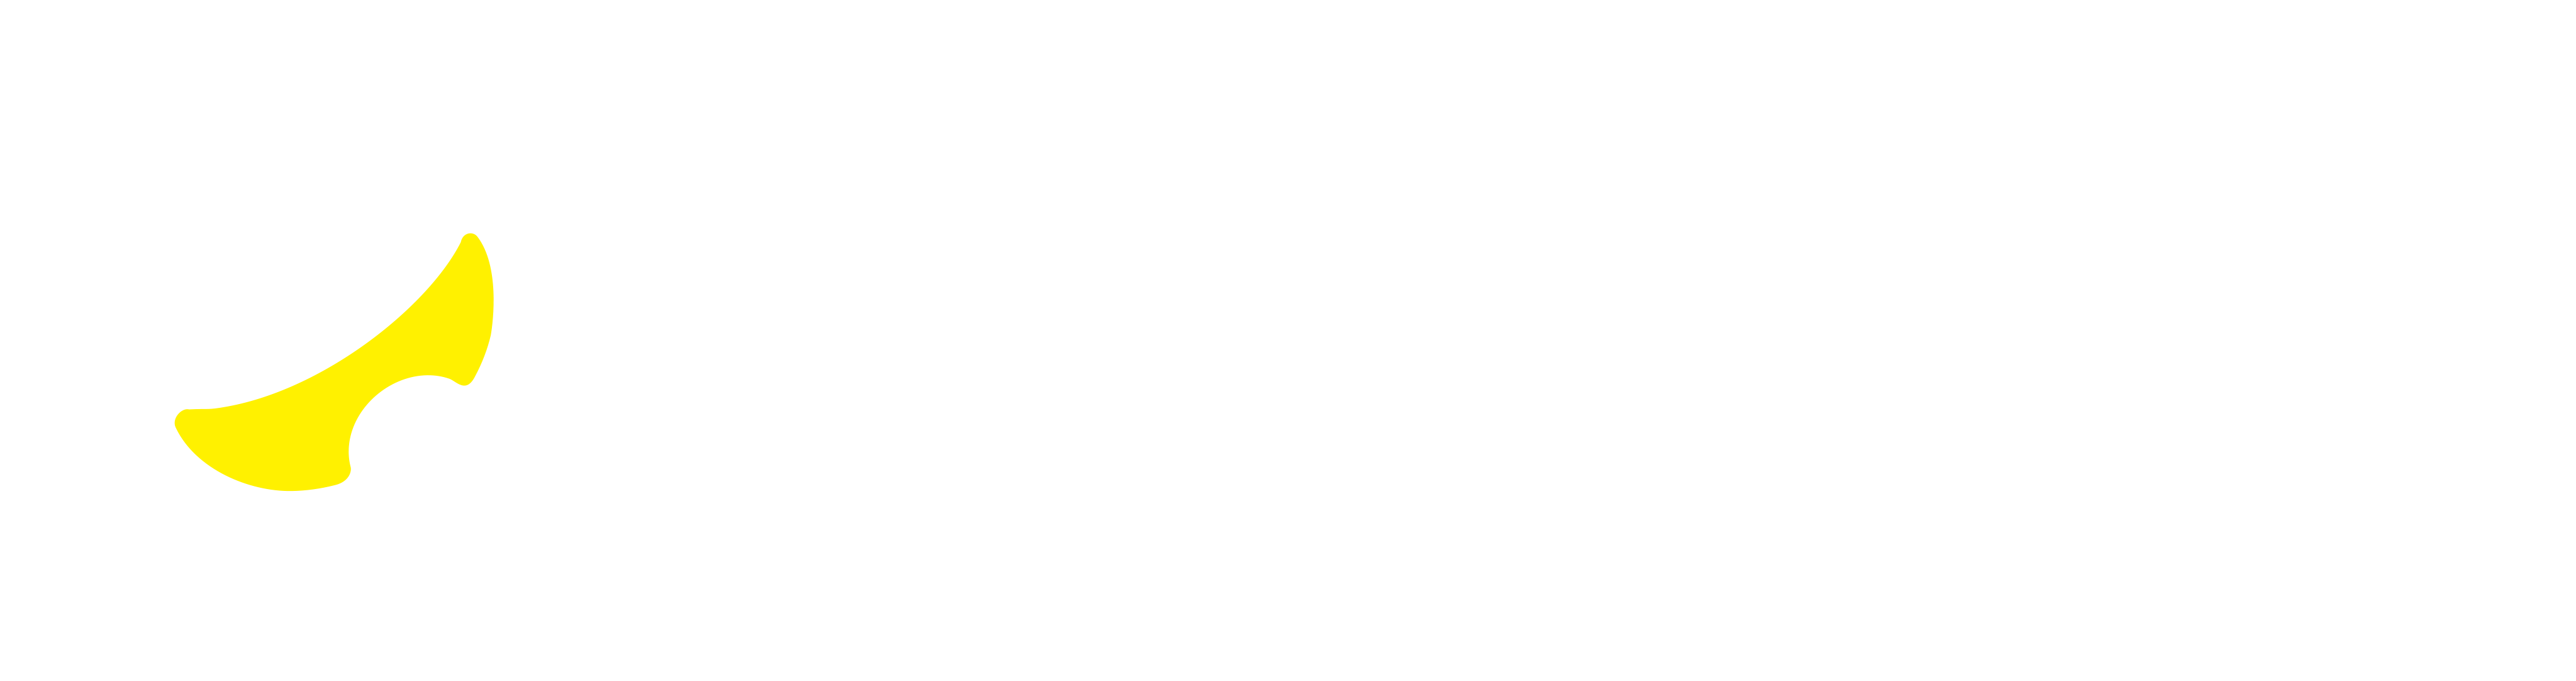 GameLens